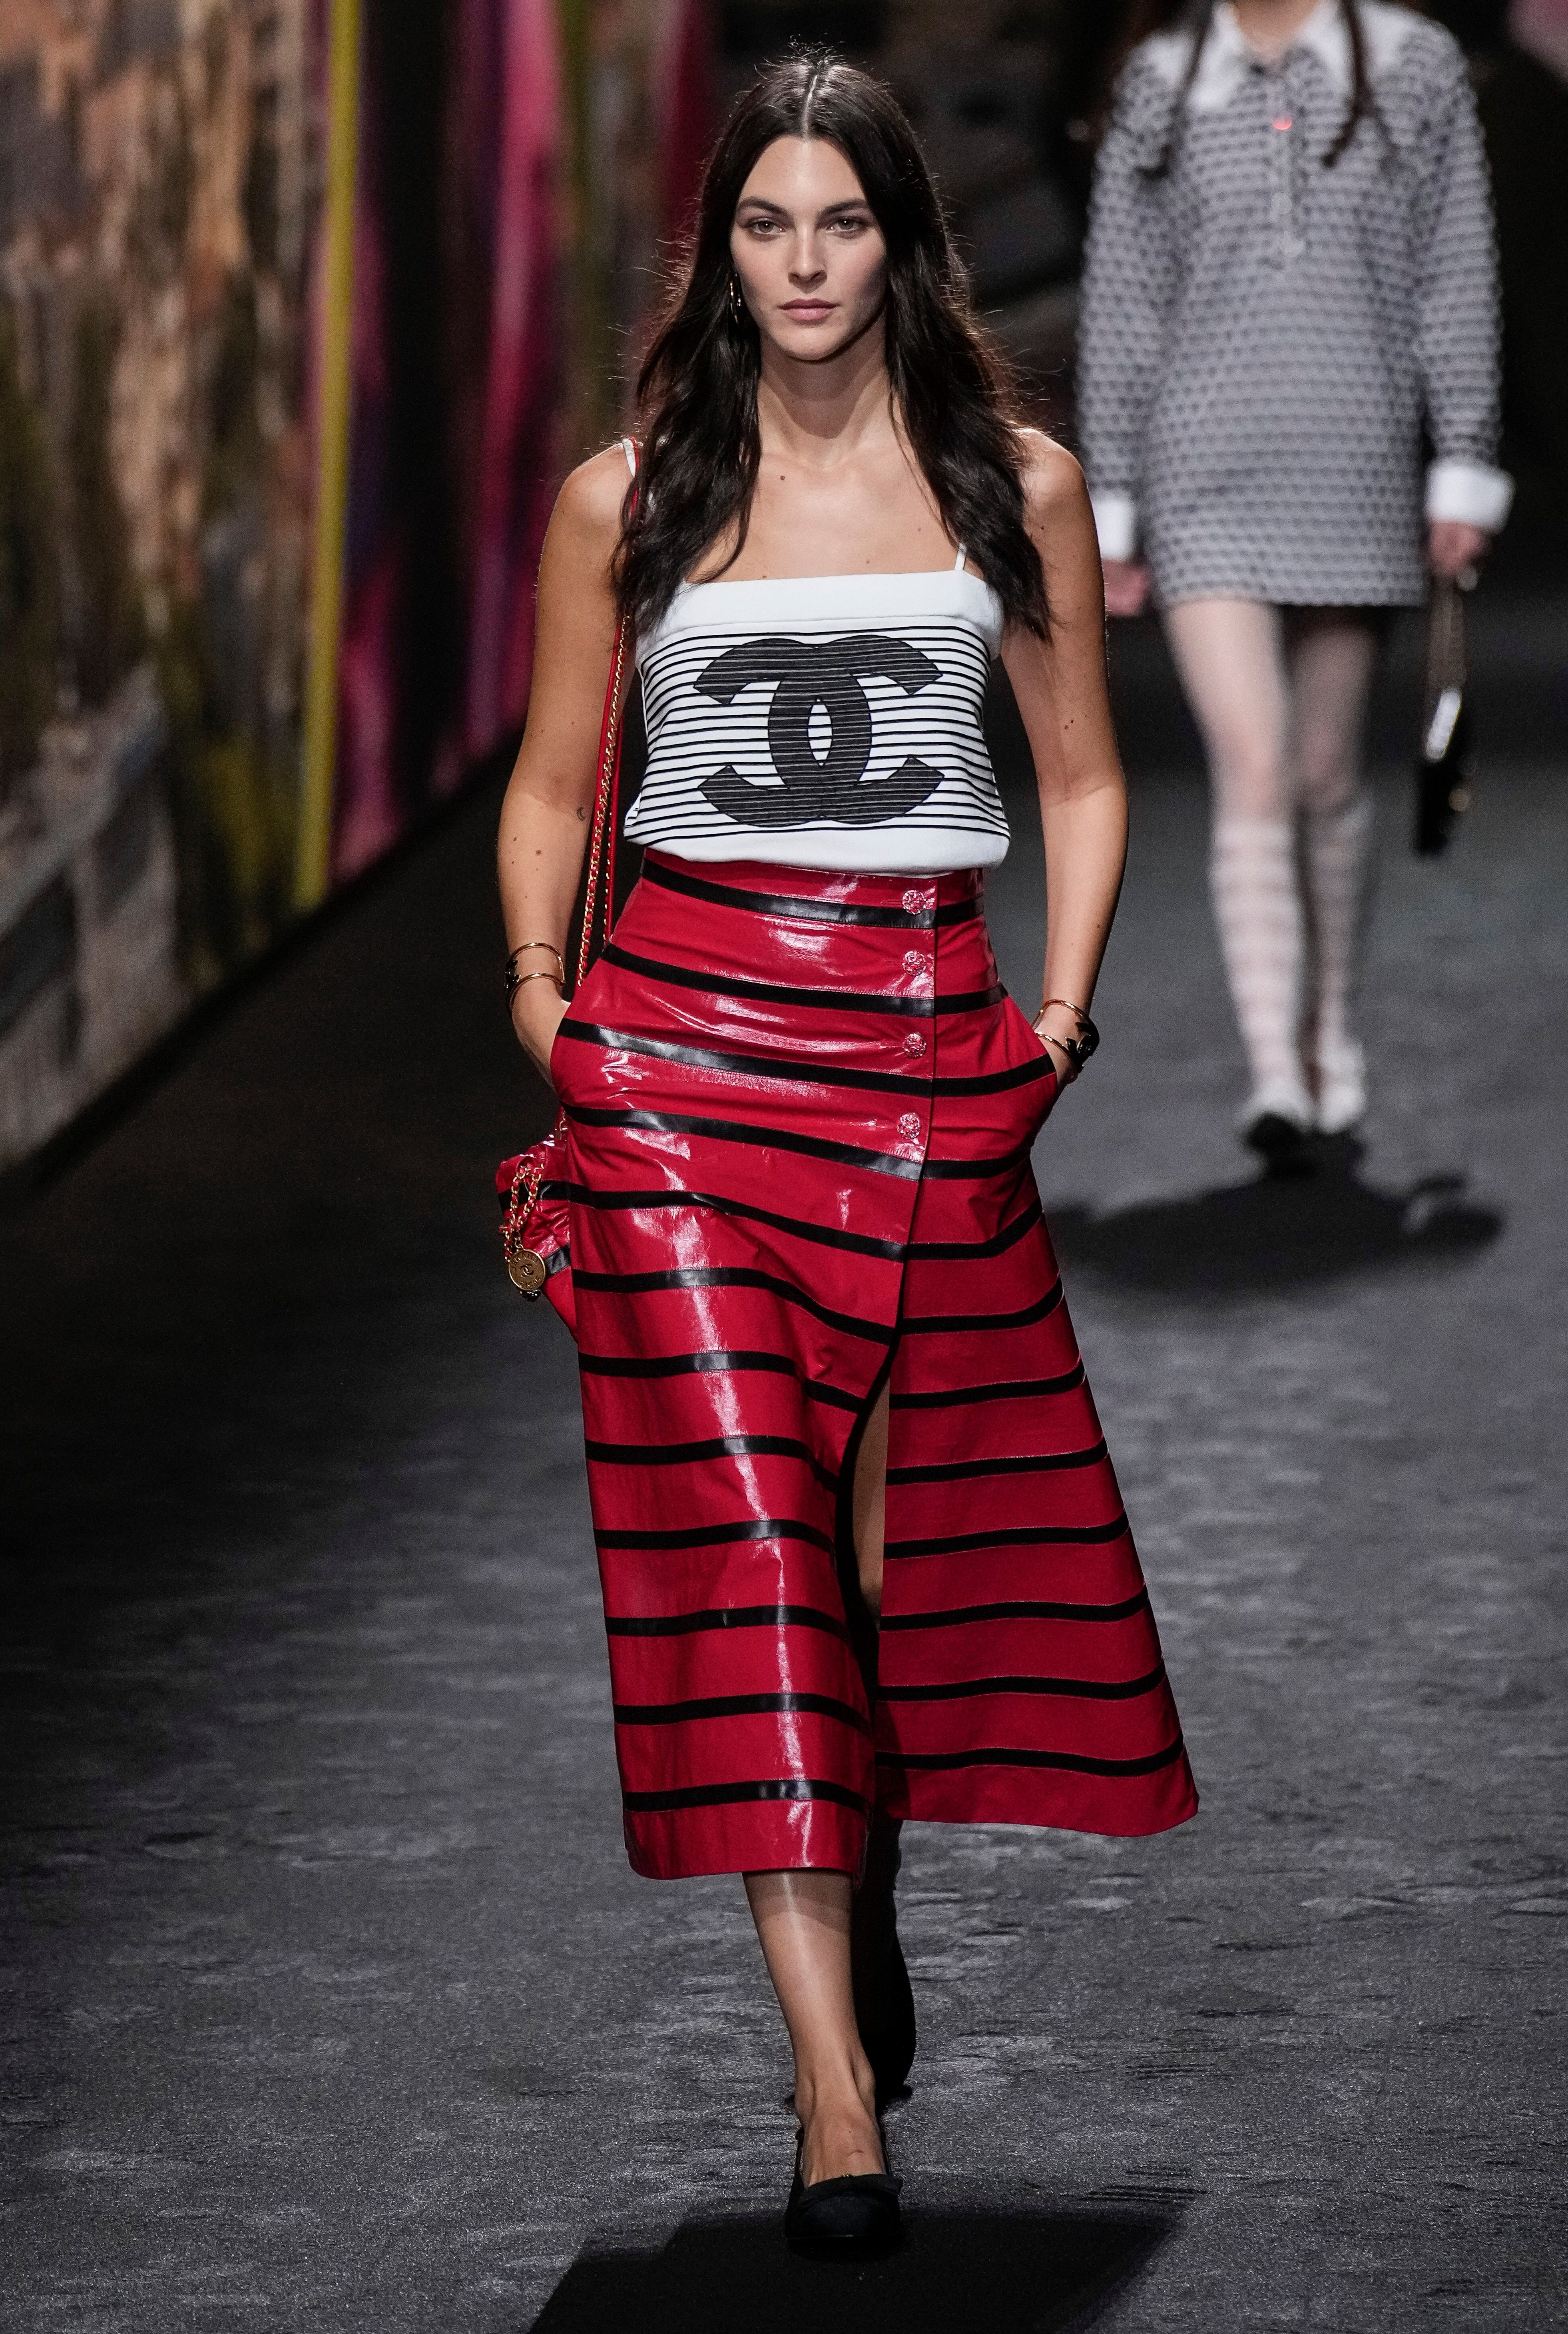 Model Vittoria trägt eine Kreation für die Chanel-Show